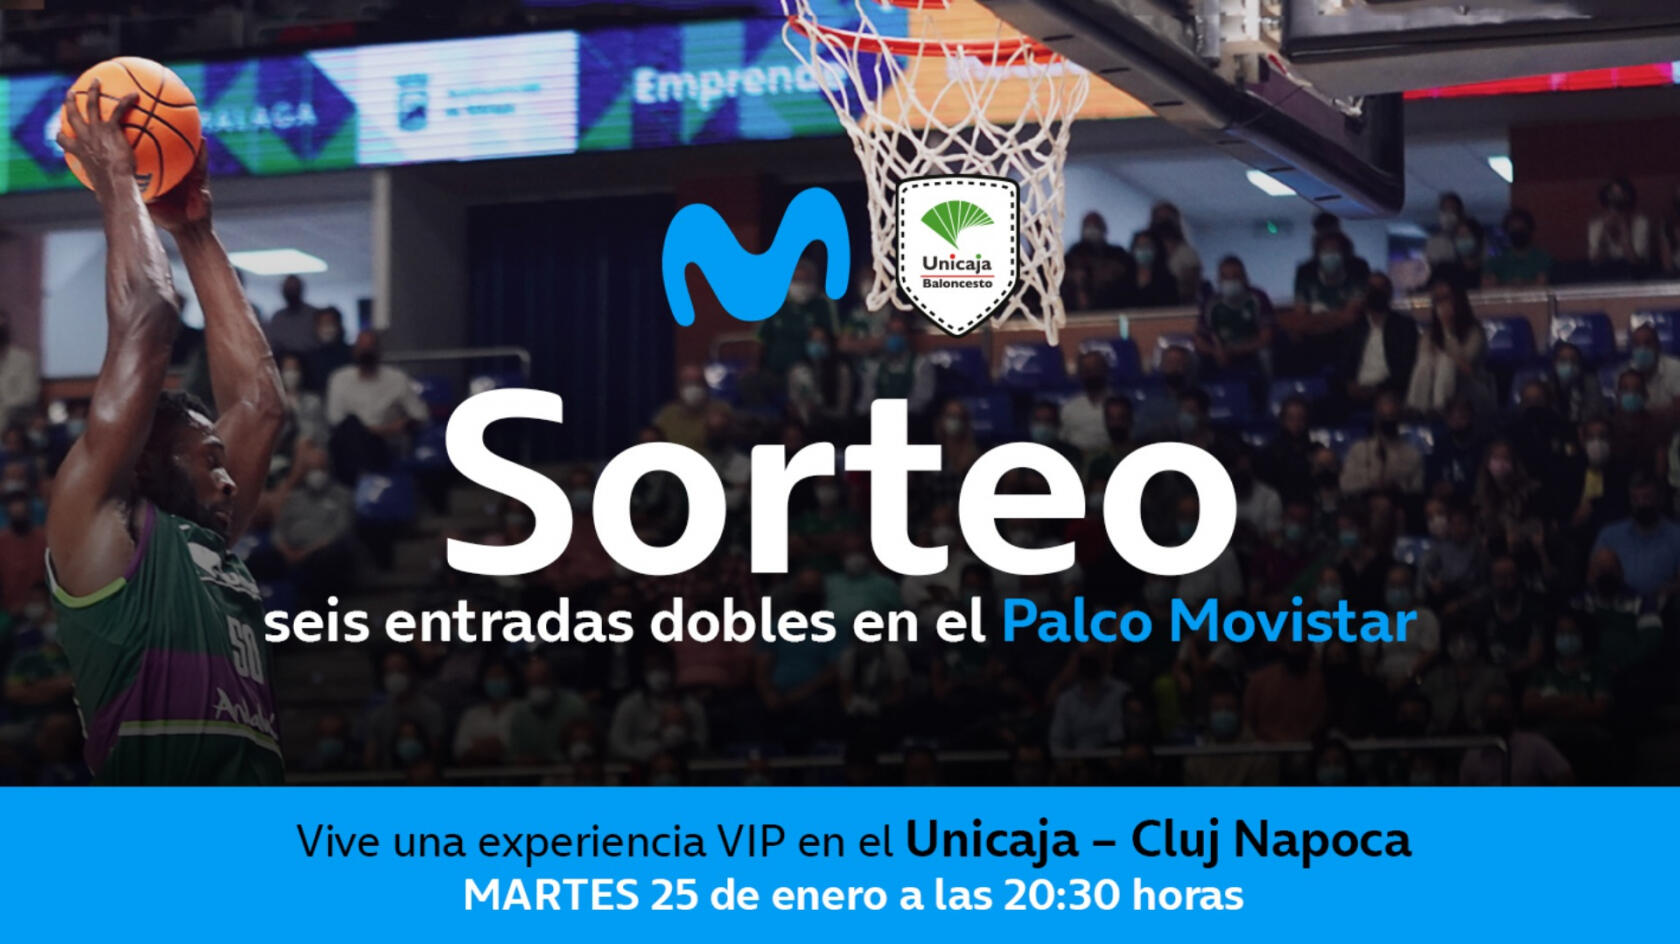 Unicaja Baloncesto y Movistar sortean 6 entradas dobles en el Palco Movistar para este martes 25